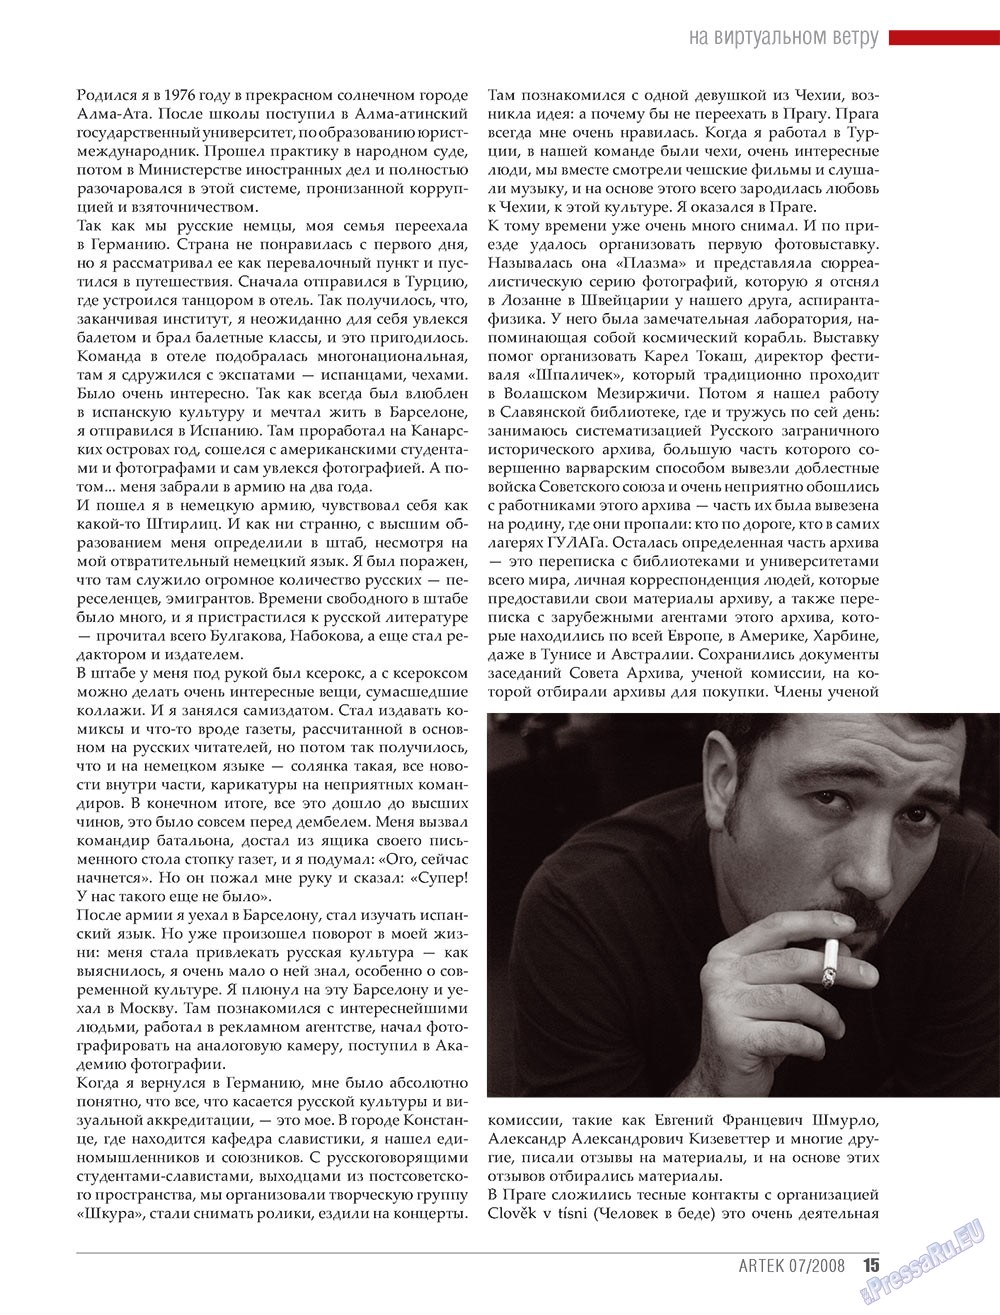 Артек, журнал. 2008 №6 стр.17